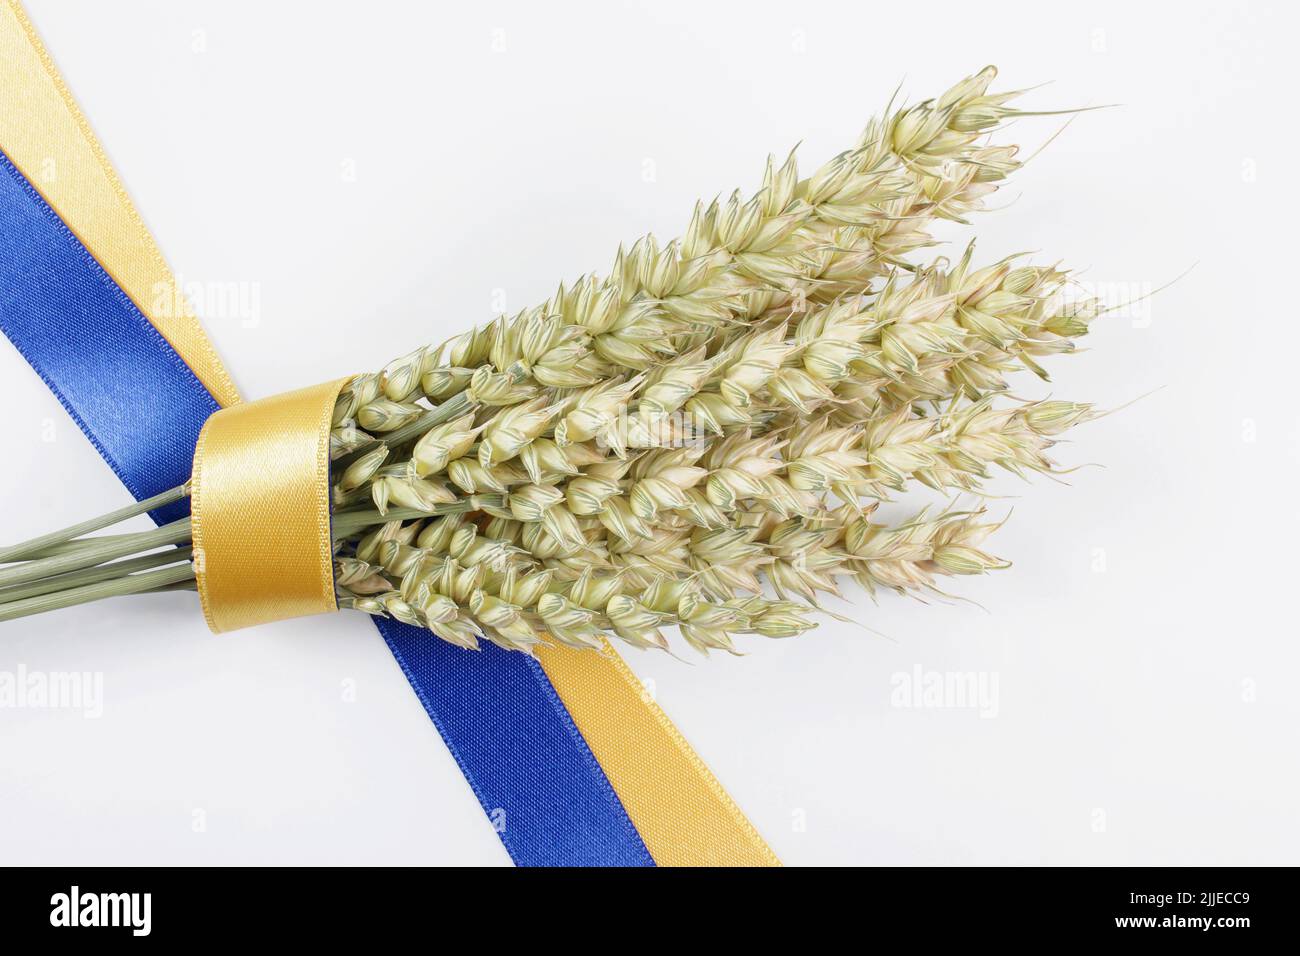 Bundle von reifen Weizenspikelet mit einem blauen und gelben Band auf weiß isoliert gebunden. Konzept der Nahrungsmittelversorgungskrise und der globalen Nahrungsmittelknappheit. Stockfoto